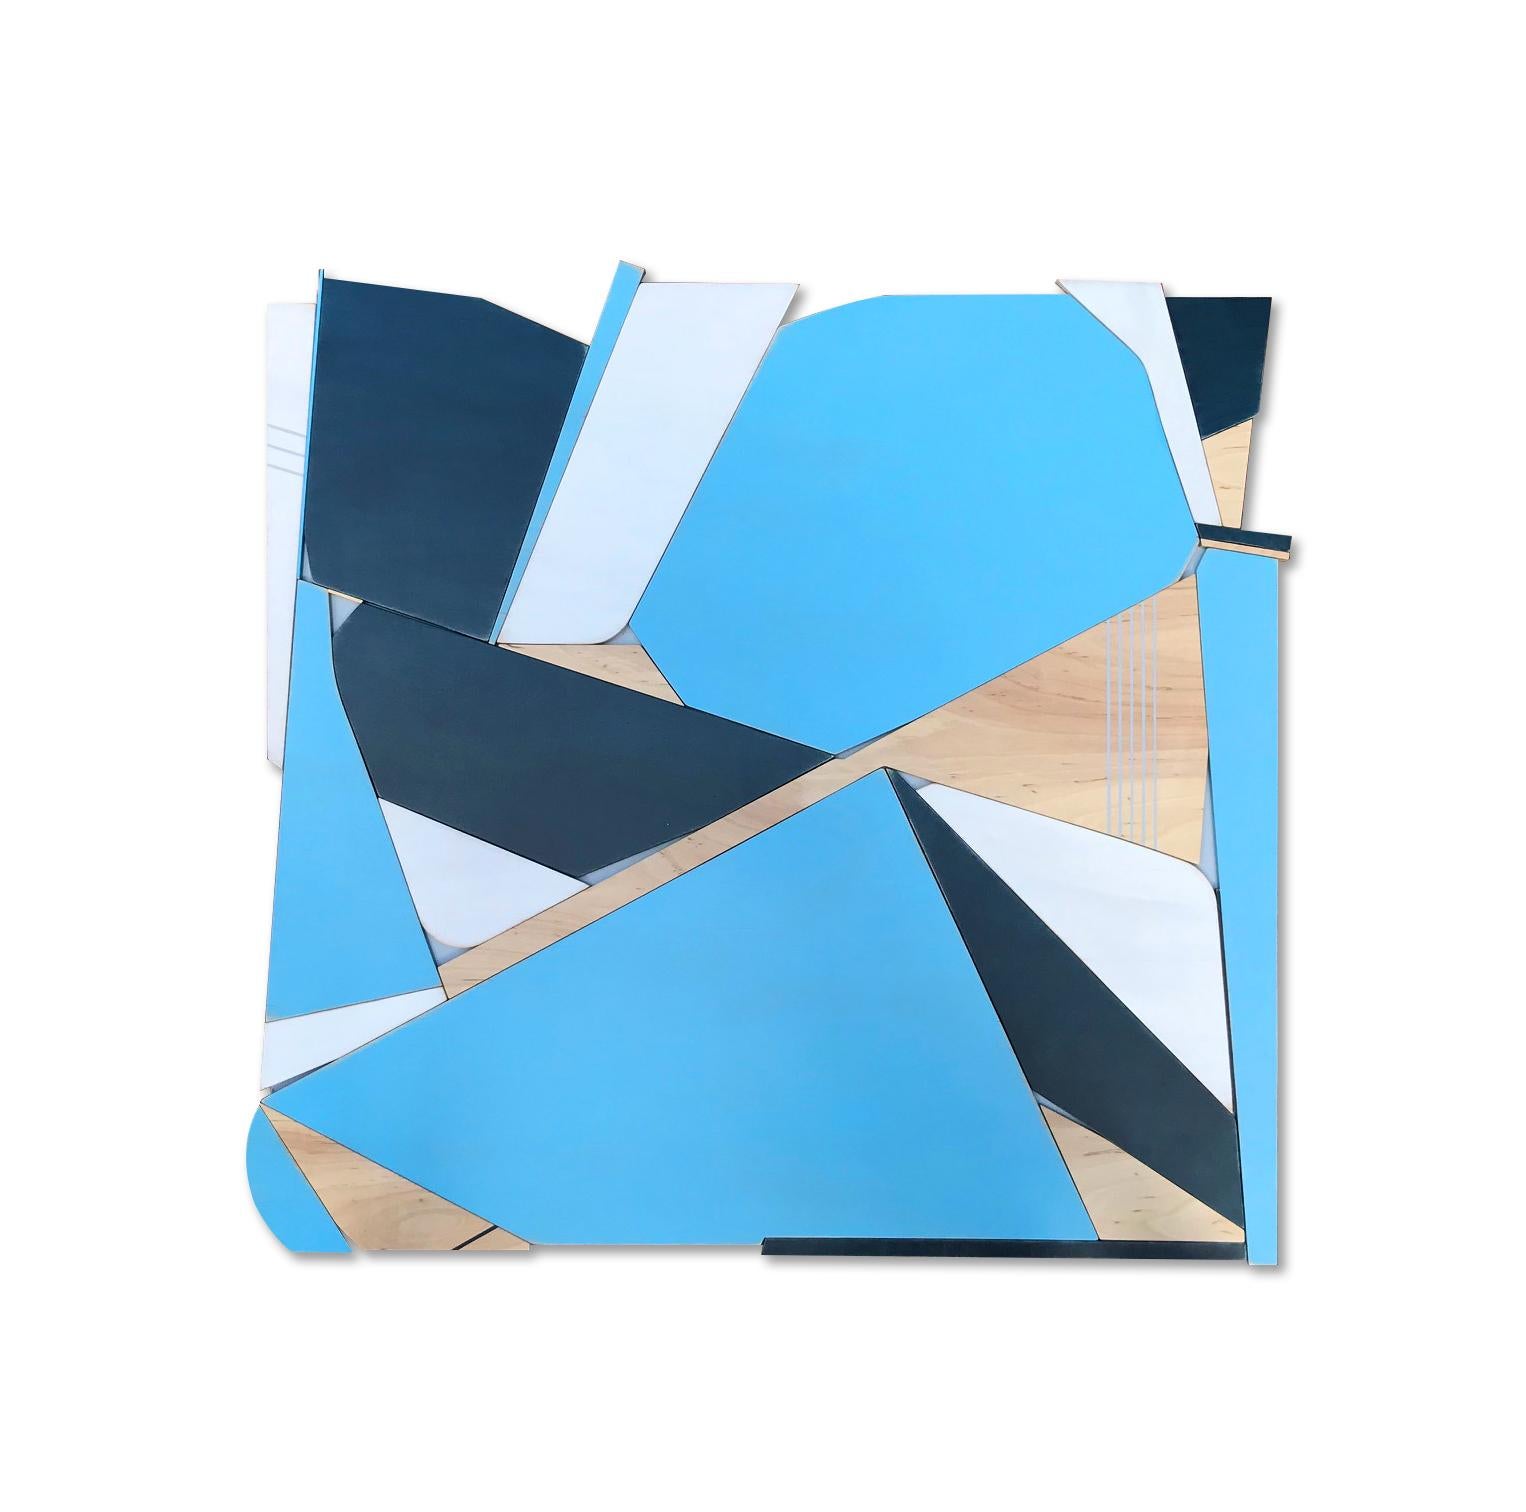 Scott Troxel Abstract Sculpture - "BlueBird" Mixed Media Wall Sculpture (white, monochrome, wood, modern, blue)